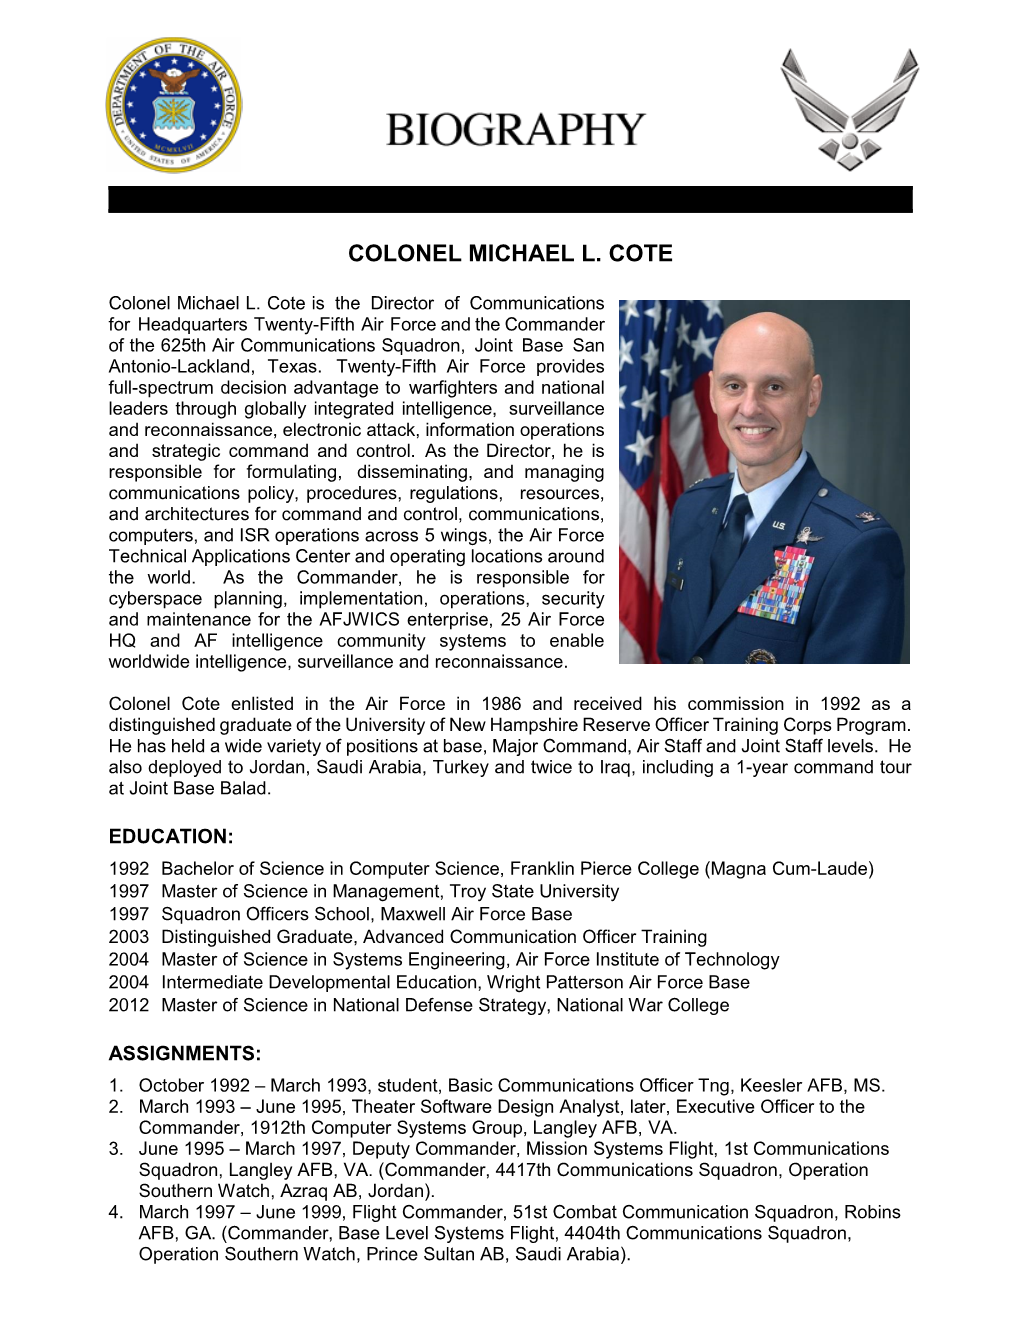 Colonel Michael L. Cote